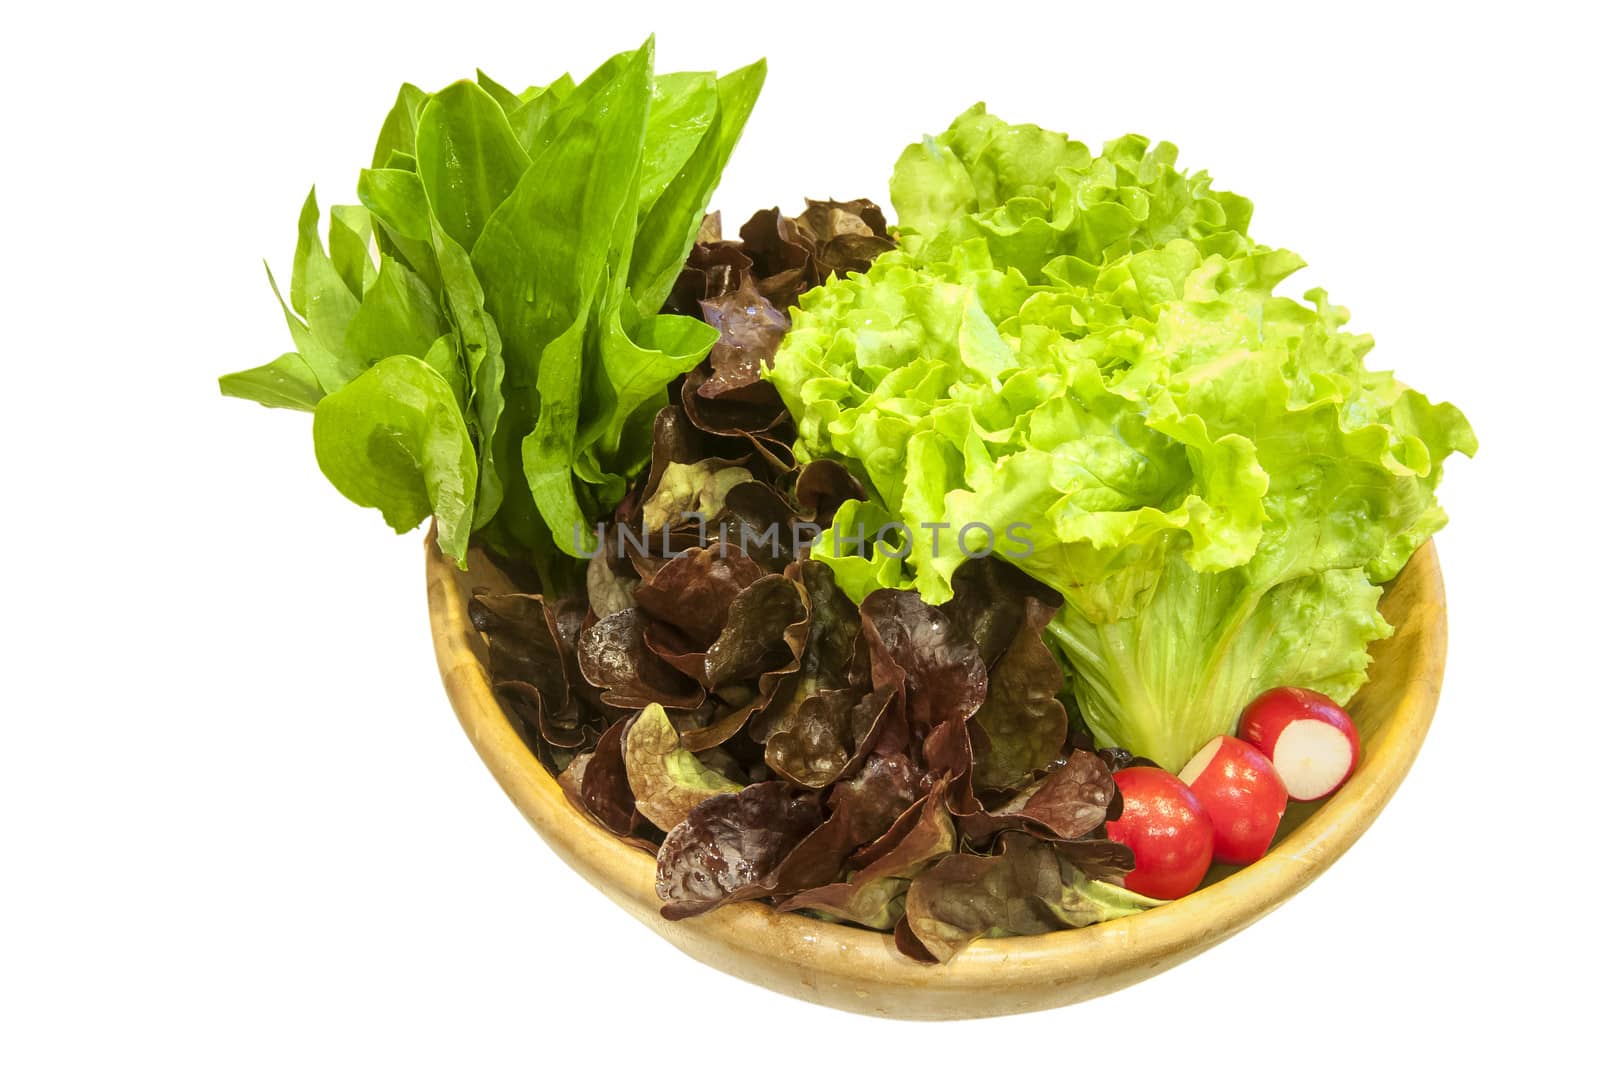 Bowl with lettuce salad, wild garlic,radishes on white background